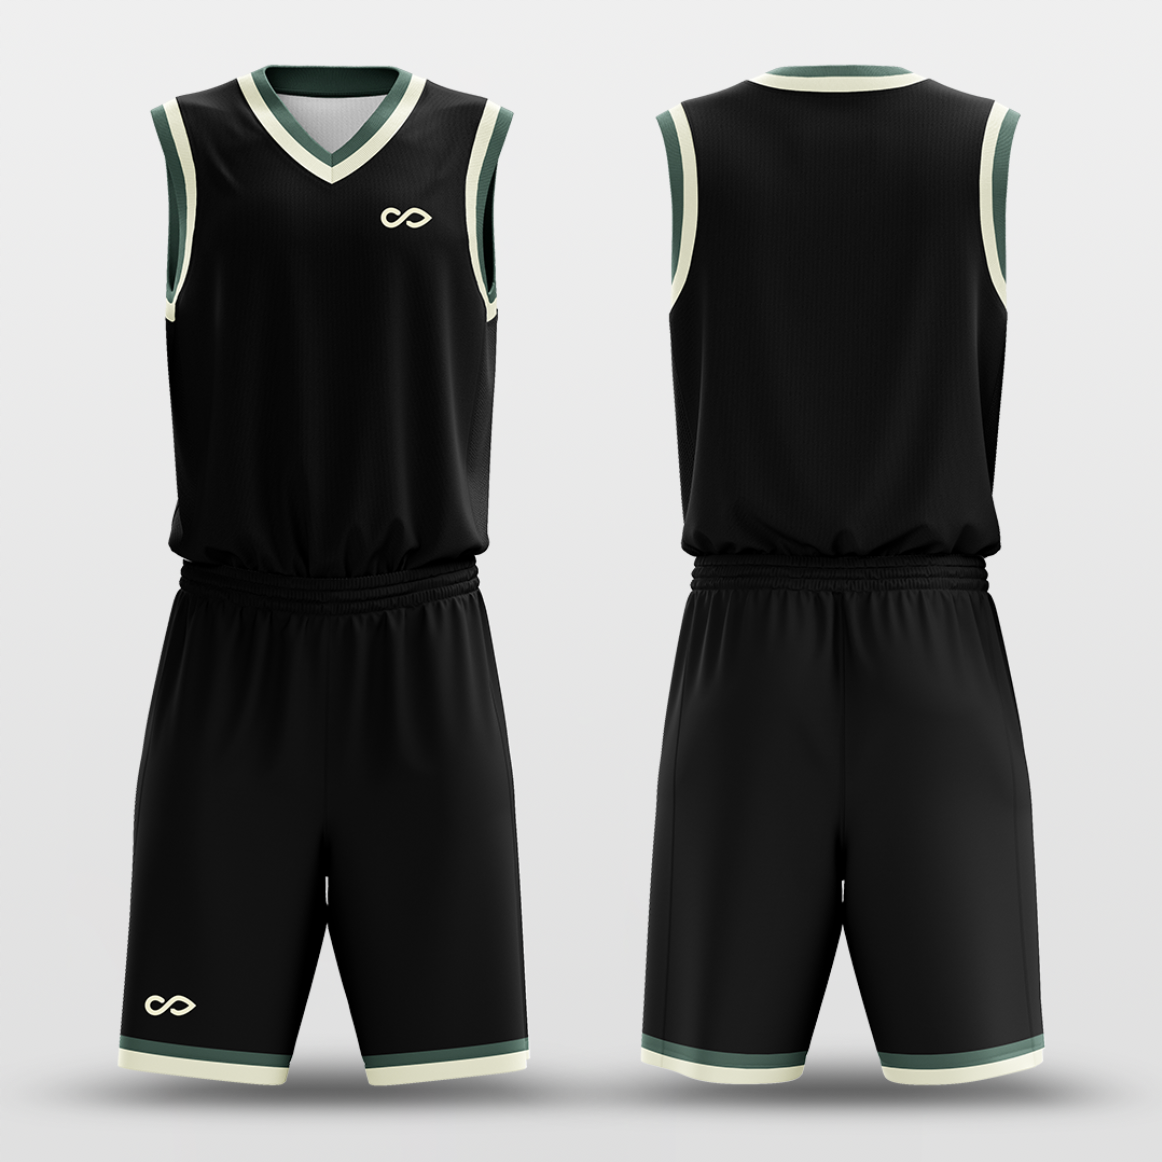 Black Khaki - Custom Basketball Jersey Set Design for Team